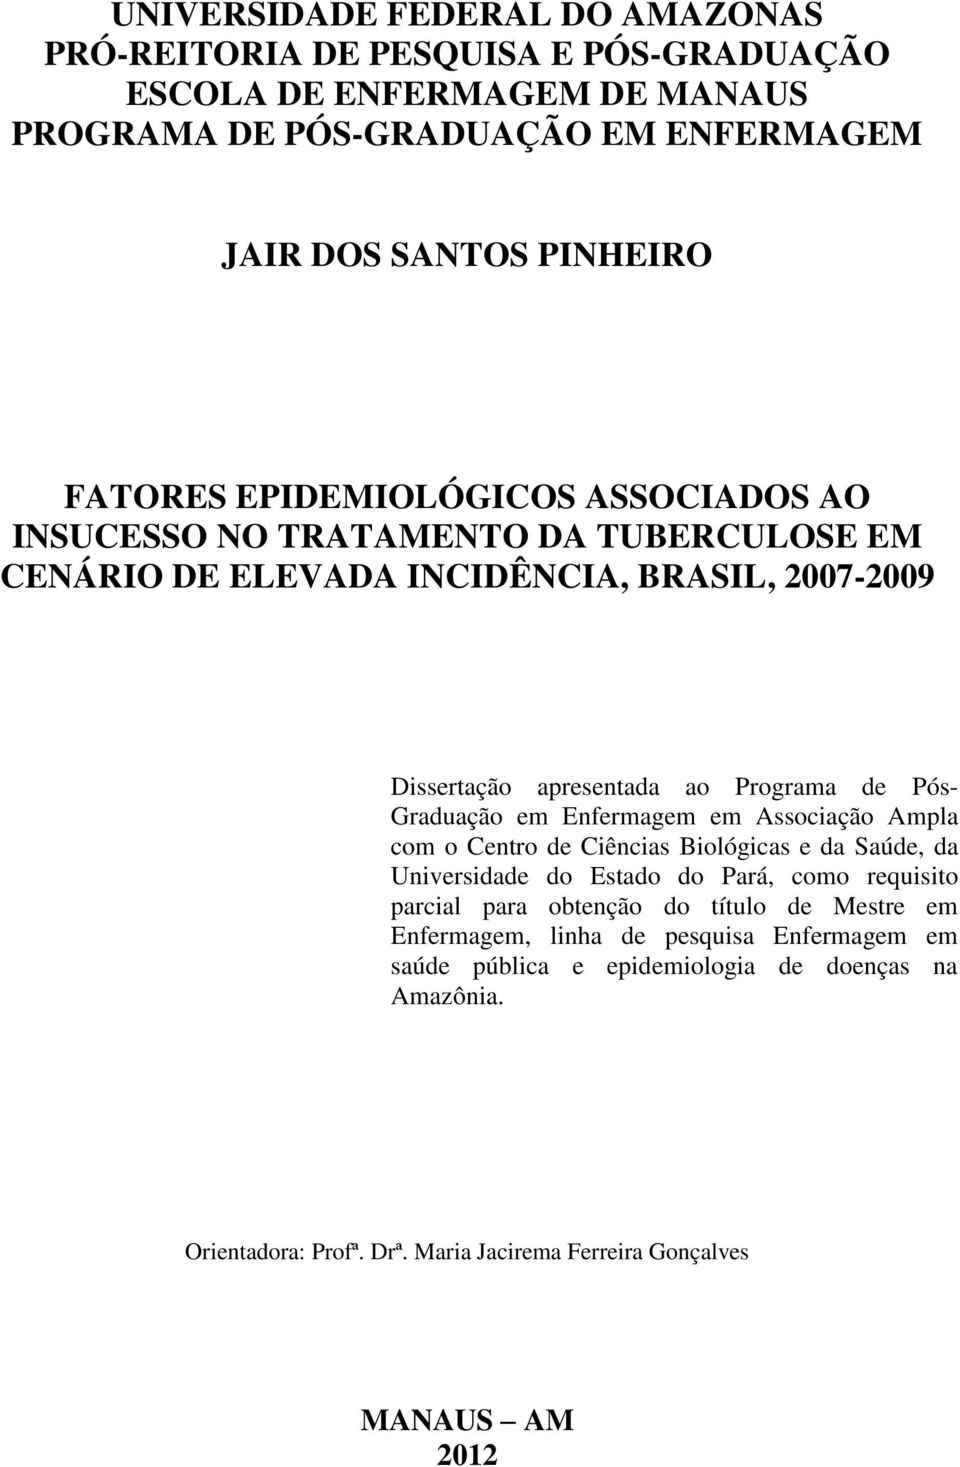 Graduação em Enfermagem em Associação Ampla com o Centro de Ciências Biológicas e da Saúde, da Universidade do Estado do Pará, como requisito parcial para obtenção do título